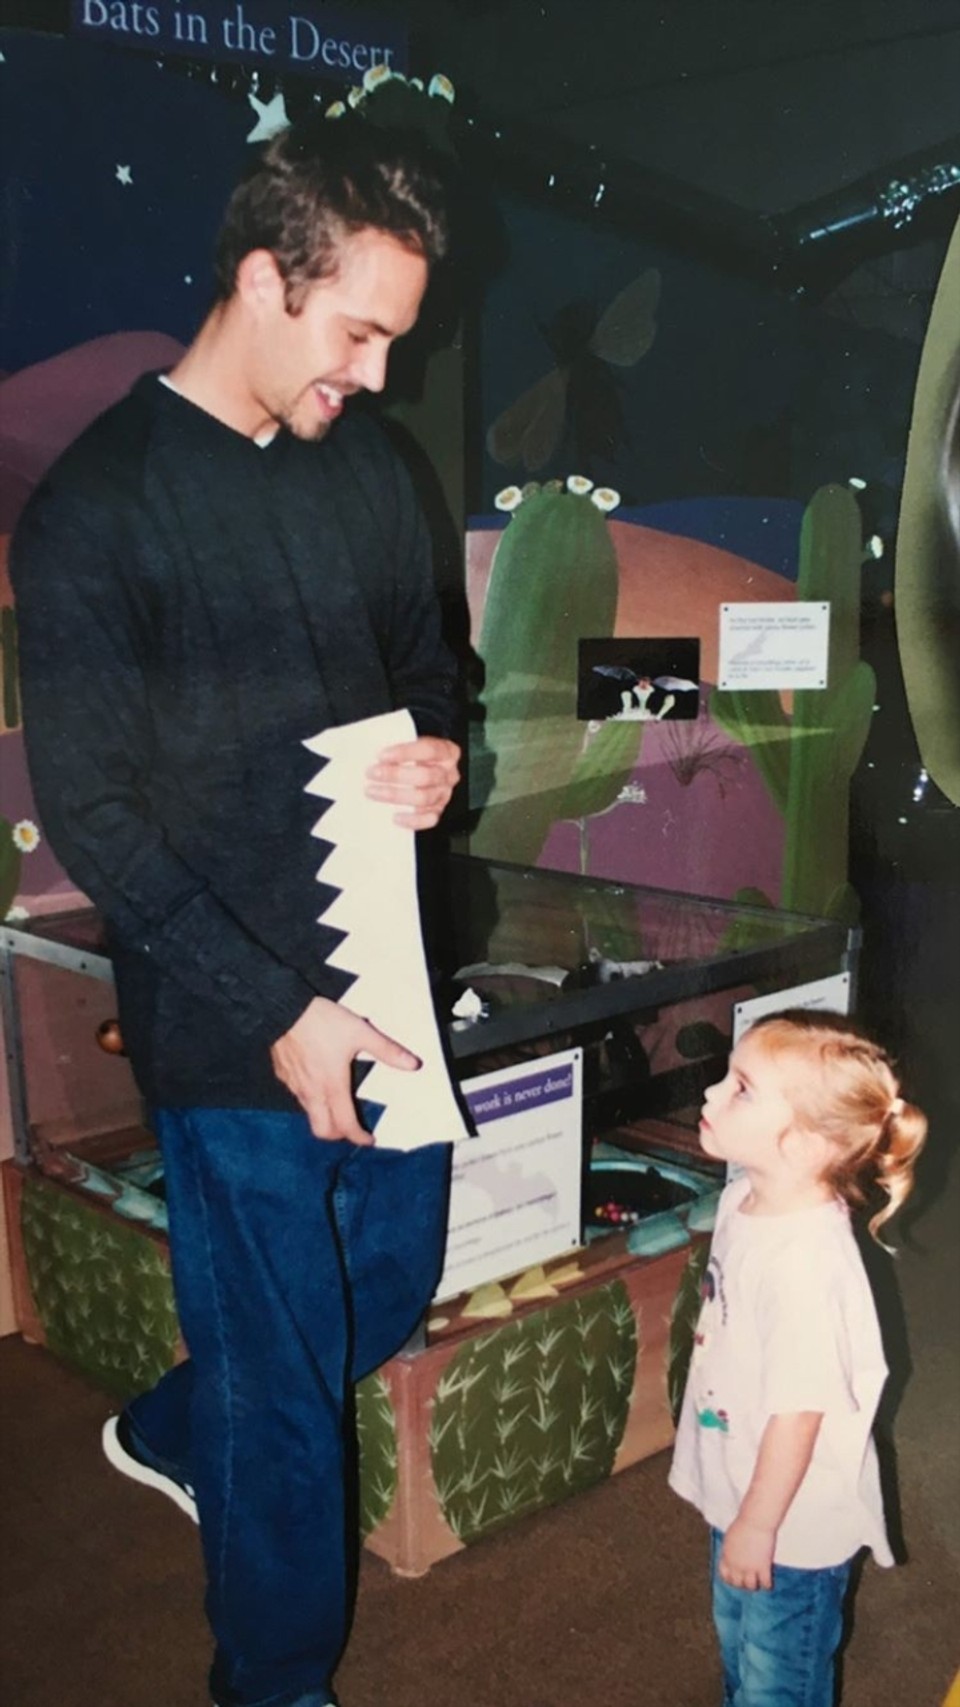 Paul Walker a jeho dcéra Meadow